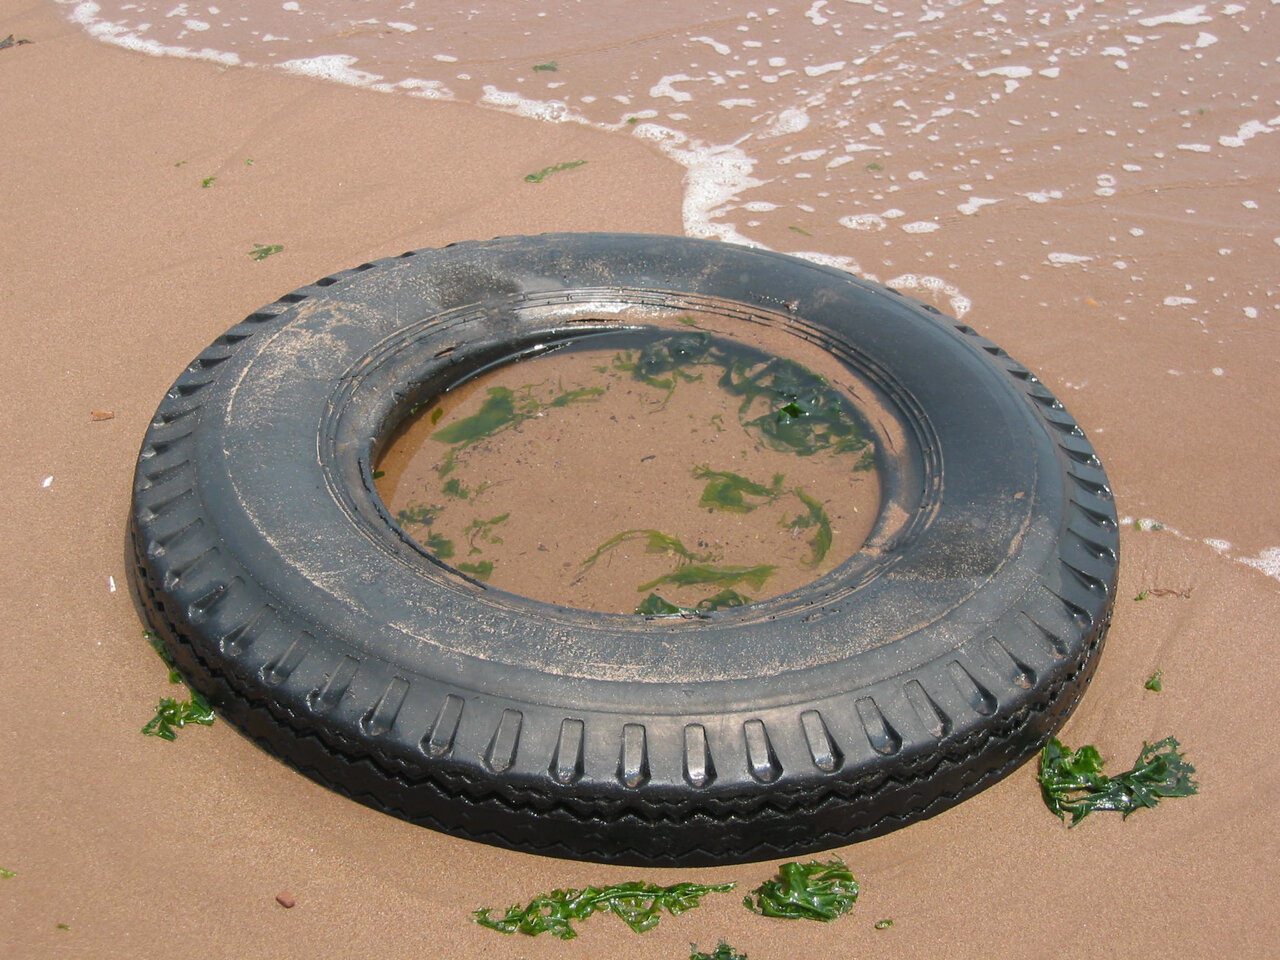   Tire, 11:54am, July 4, 2004. Oakwood Beach, Staten Island.  